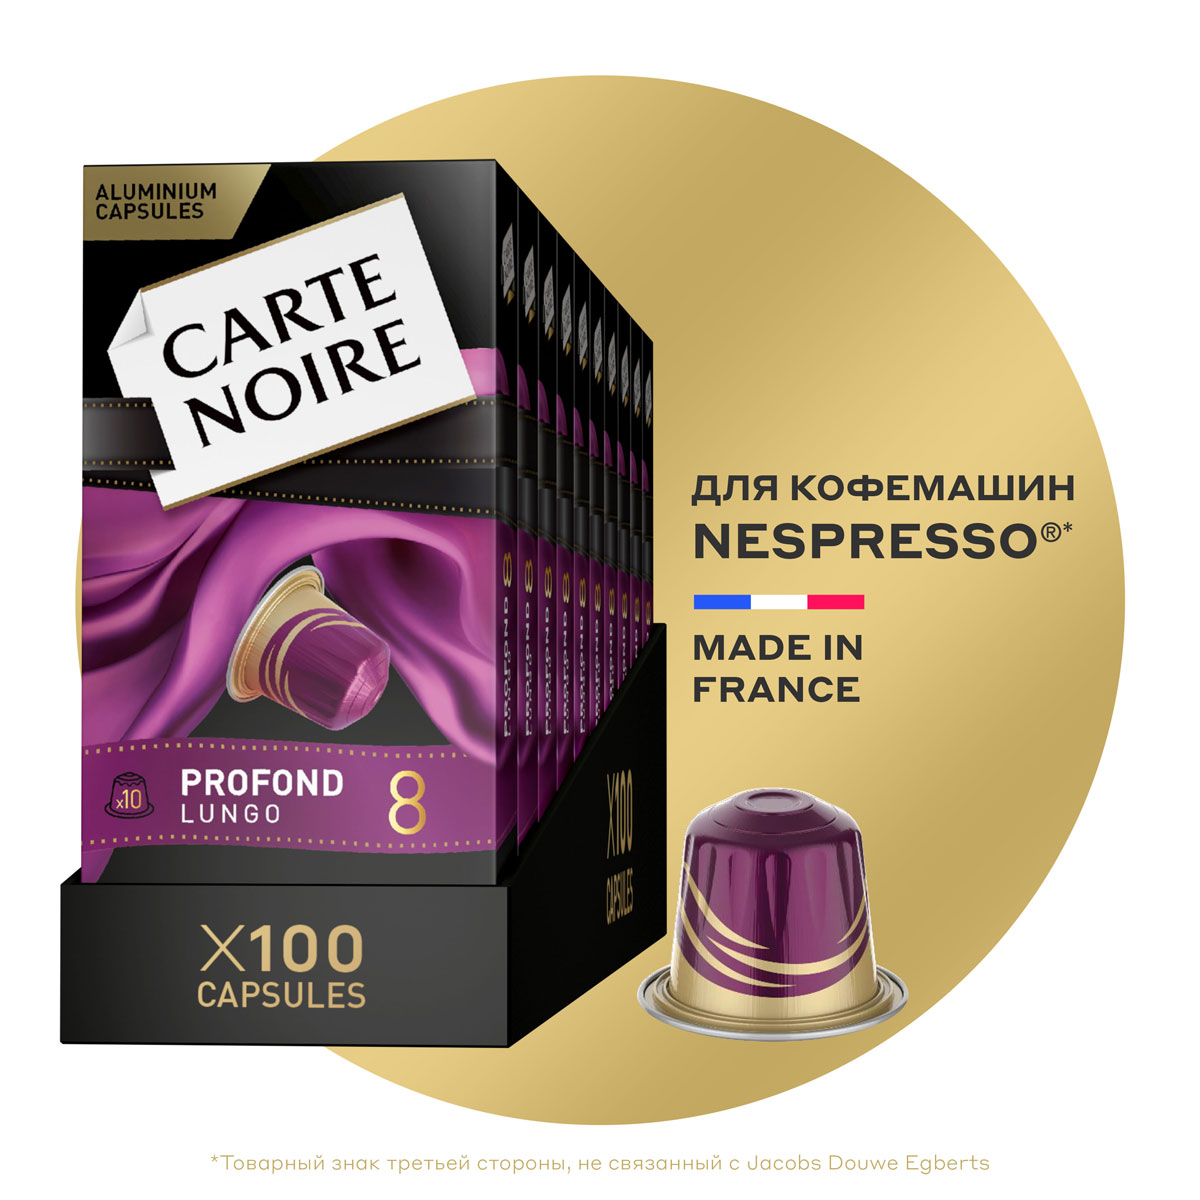 Кофе в капсулах Carte Noire Profond Lungo, 10 упаковок, 100 капсул